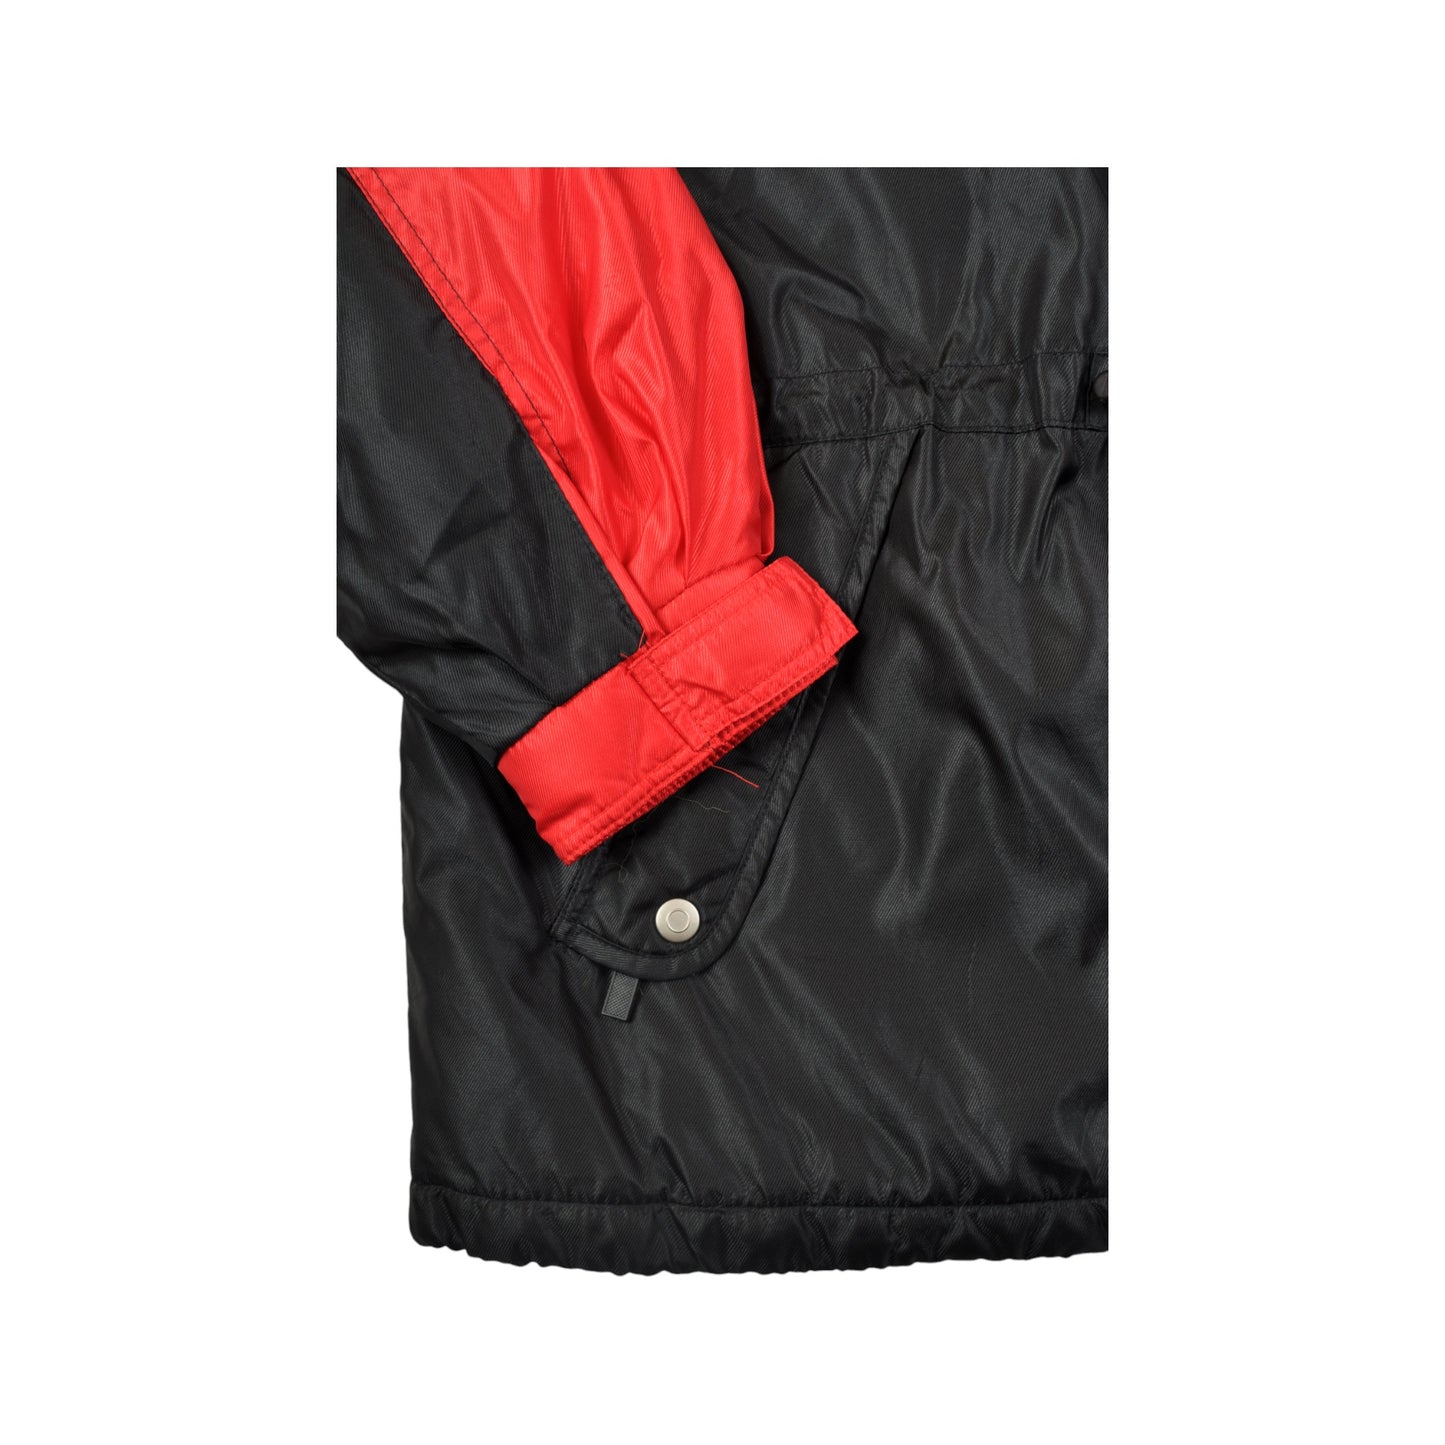 Vintage Ski Jacket Waterproof Black/Red XXL